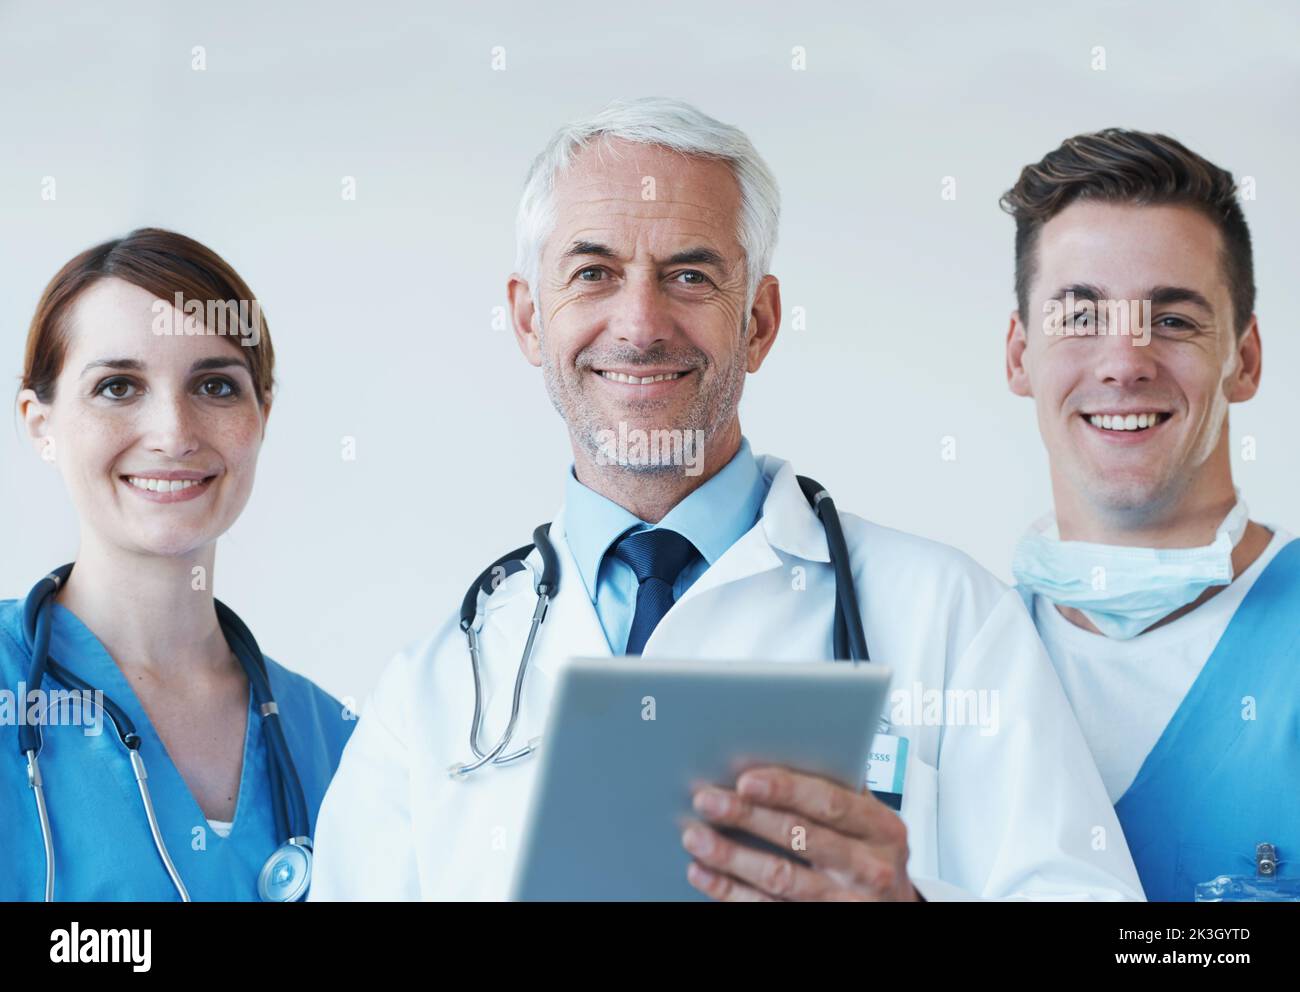 Die Technologie ebnet den Weg für neue medizinische Entdeckungen. Drei Mediziner diskutieren über Informationen, die auf einem digitalen Tablet präsentiert werden. Stockfoto